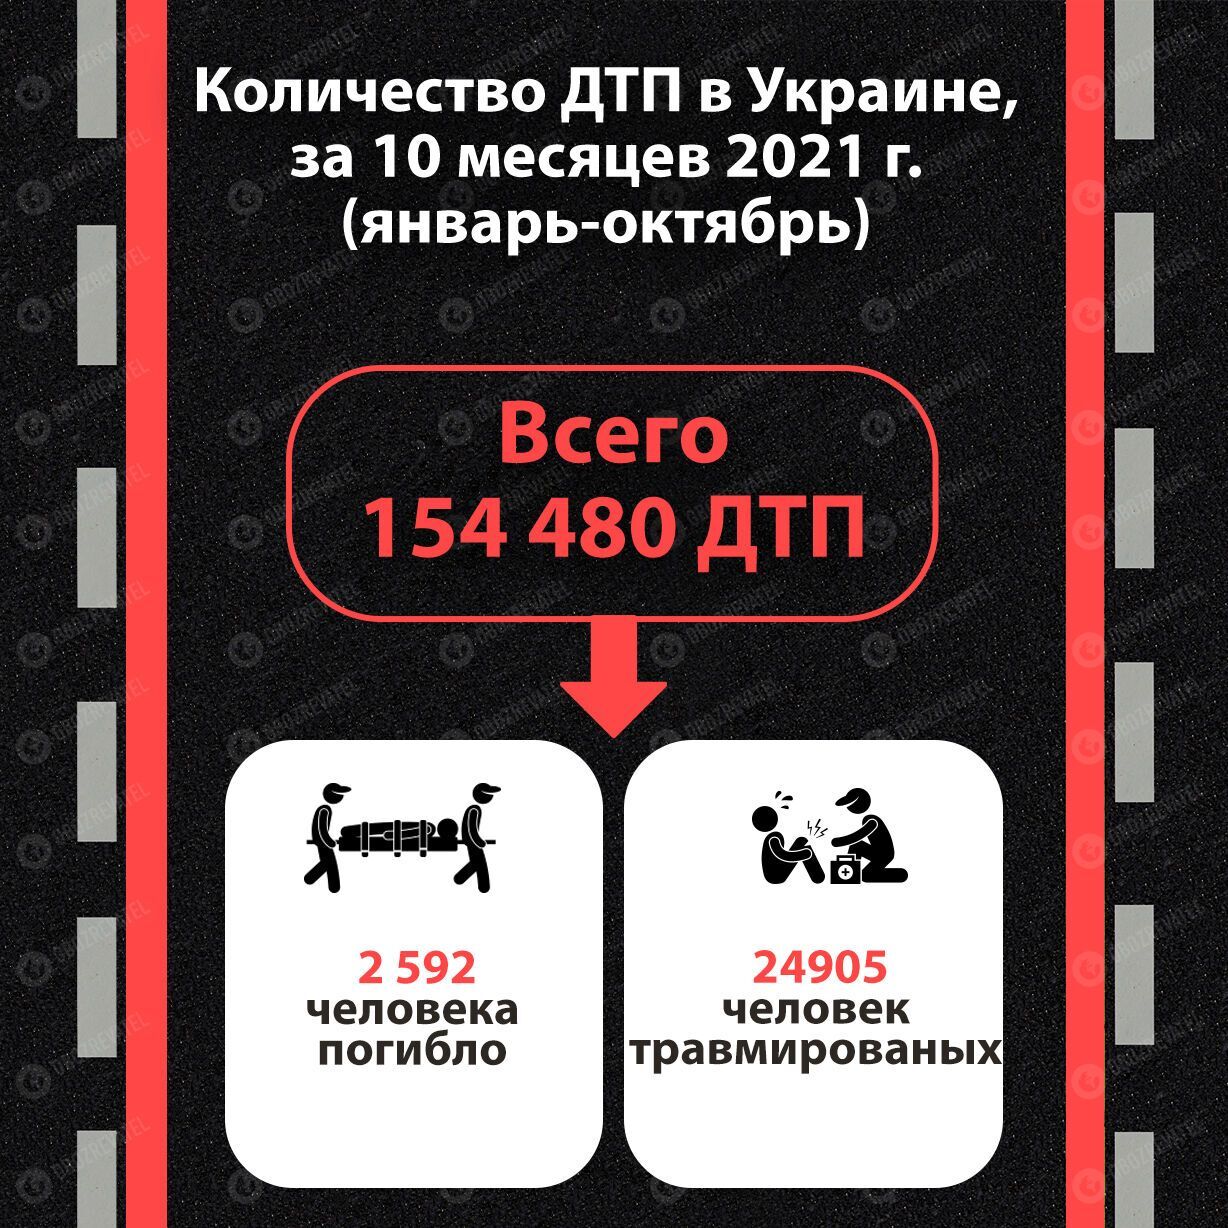 Статистика ДТП за десять месяцев 2021 года в Украине